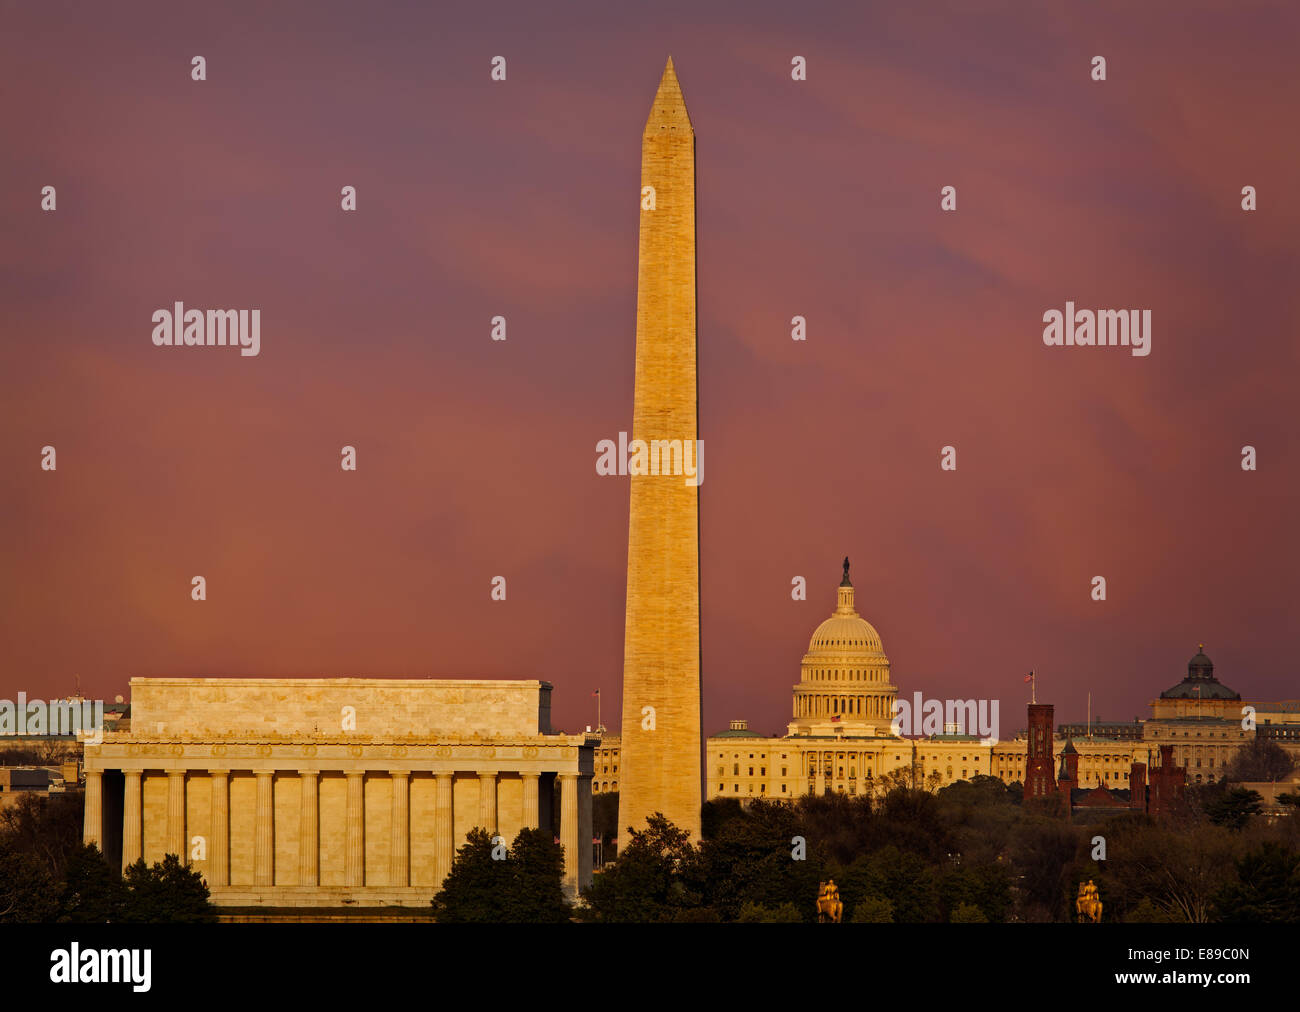 Blick auf das Lincoln Memorial, Washington Monument und dem US Capitol Building in Washington, D.C. während des Sonnenuntergangs. Stockfoto